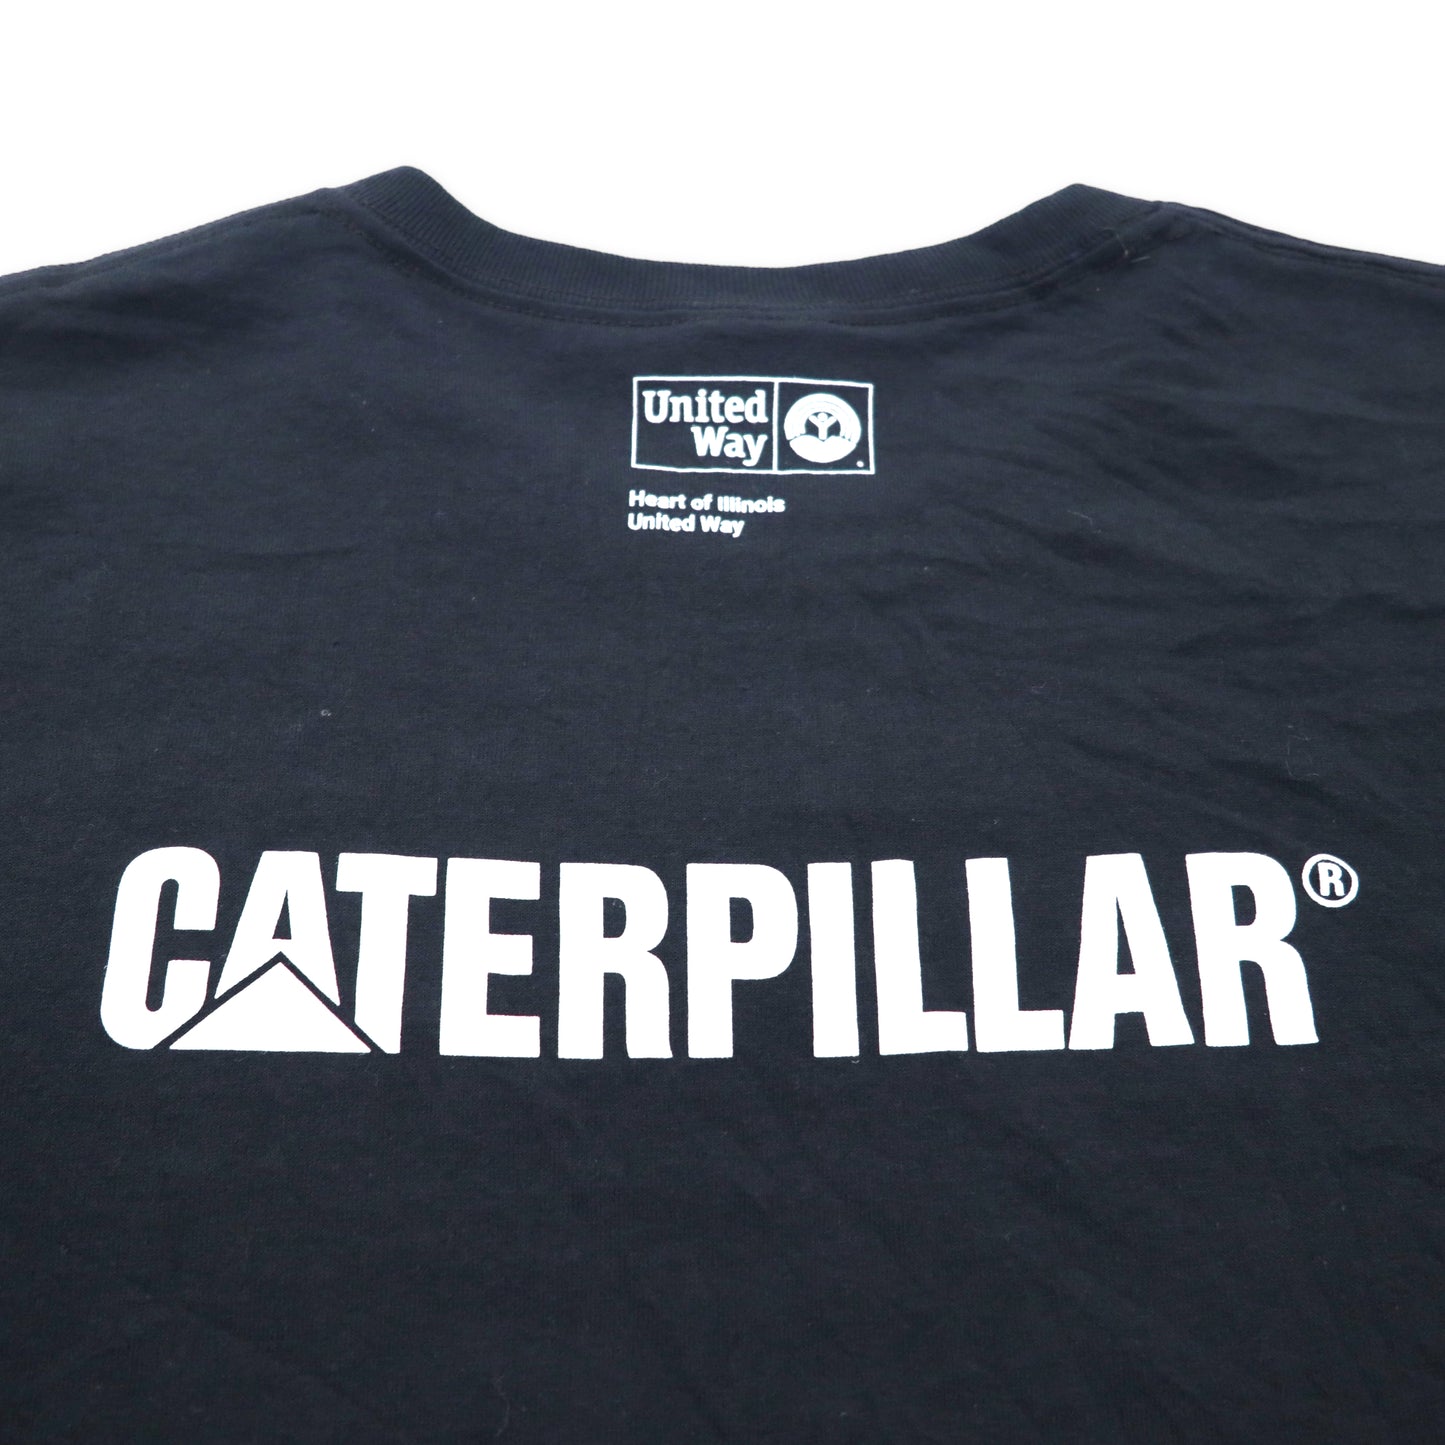 JERZEES 両面プリント Tシャツ XL ブラック コットン US企業 CATERPILLAR LIVE UNITED ビッグサイズ